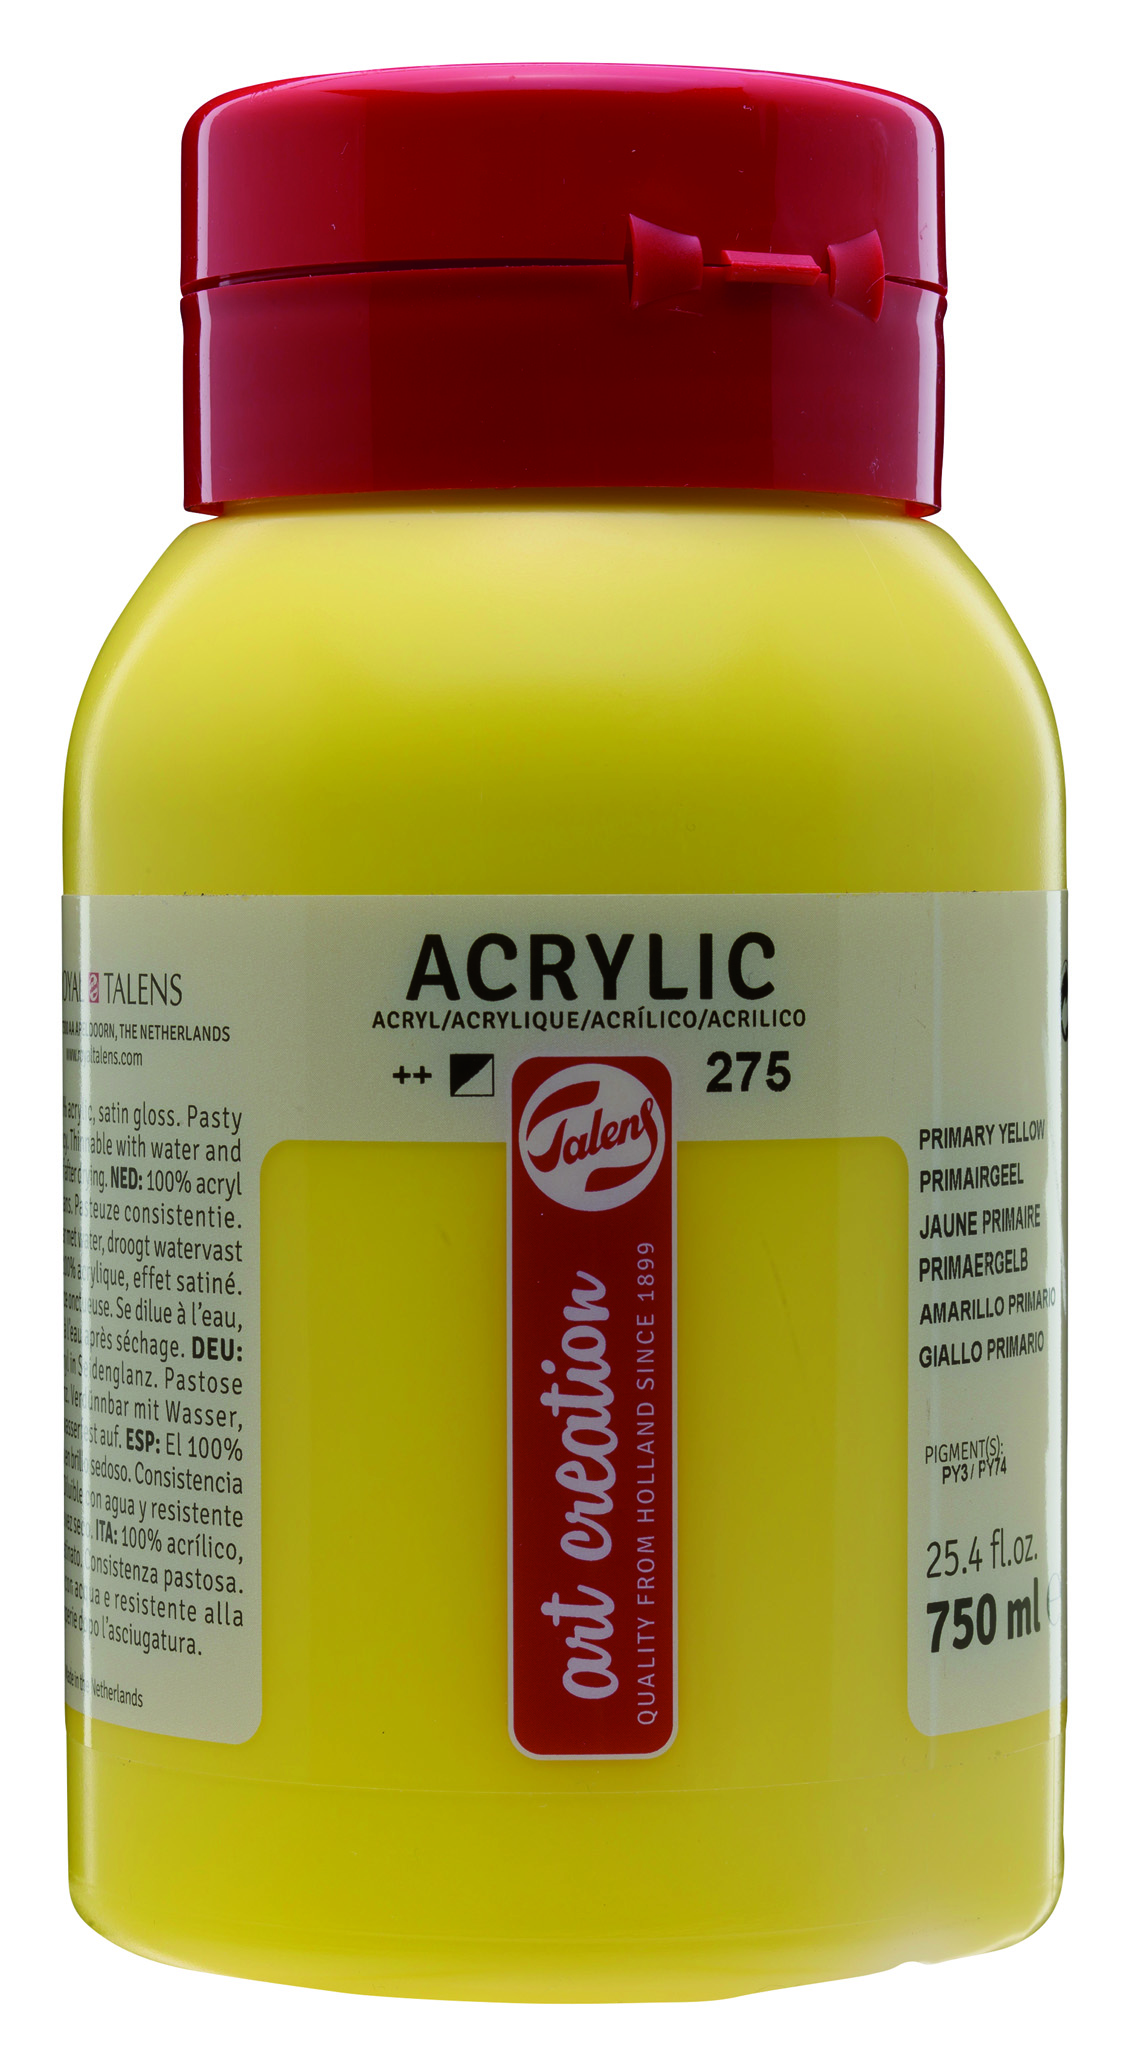 ROYAL TALENS Akrylová barva ARTCREATION 750 ml dóza